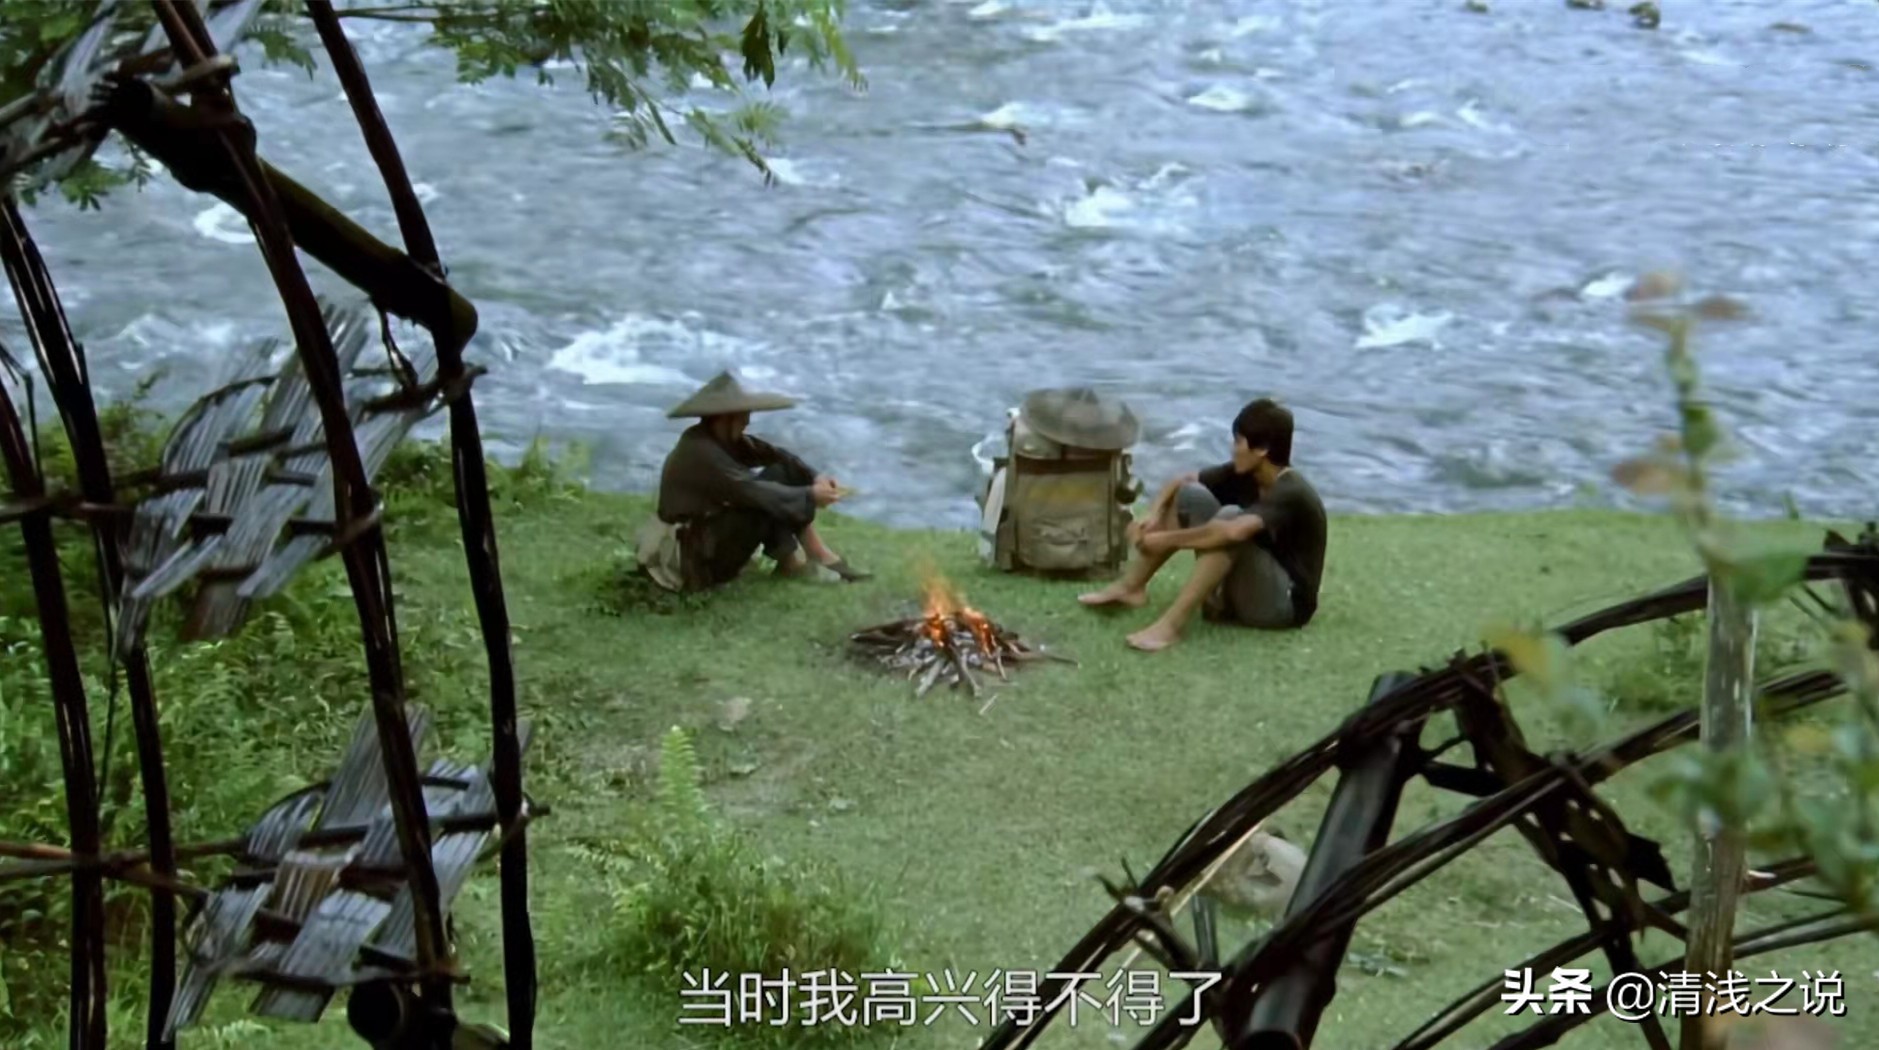 青涩的刘烨、陈好在老电影《那人那山那狗》奉献了一场质朴的爱情